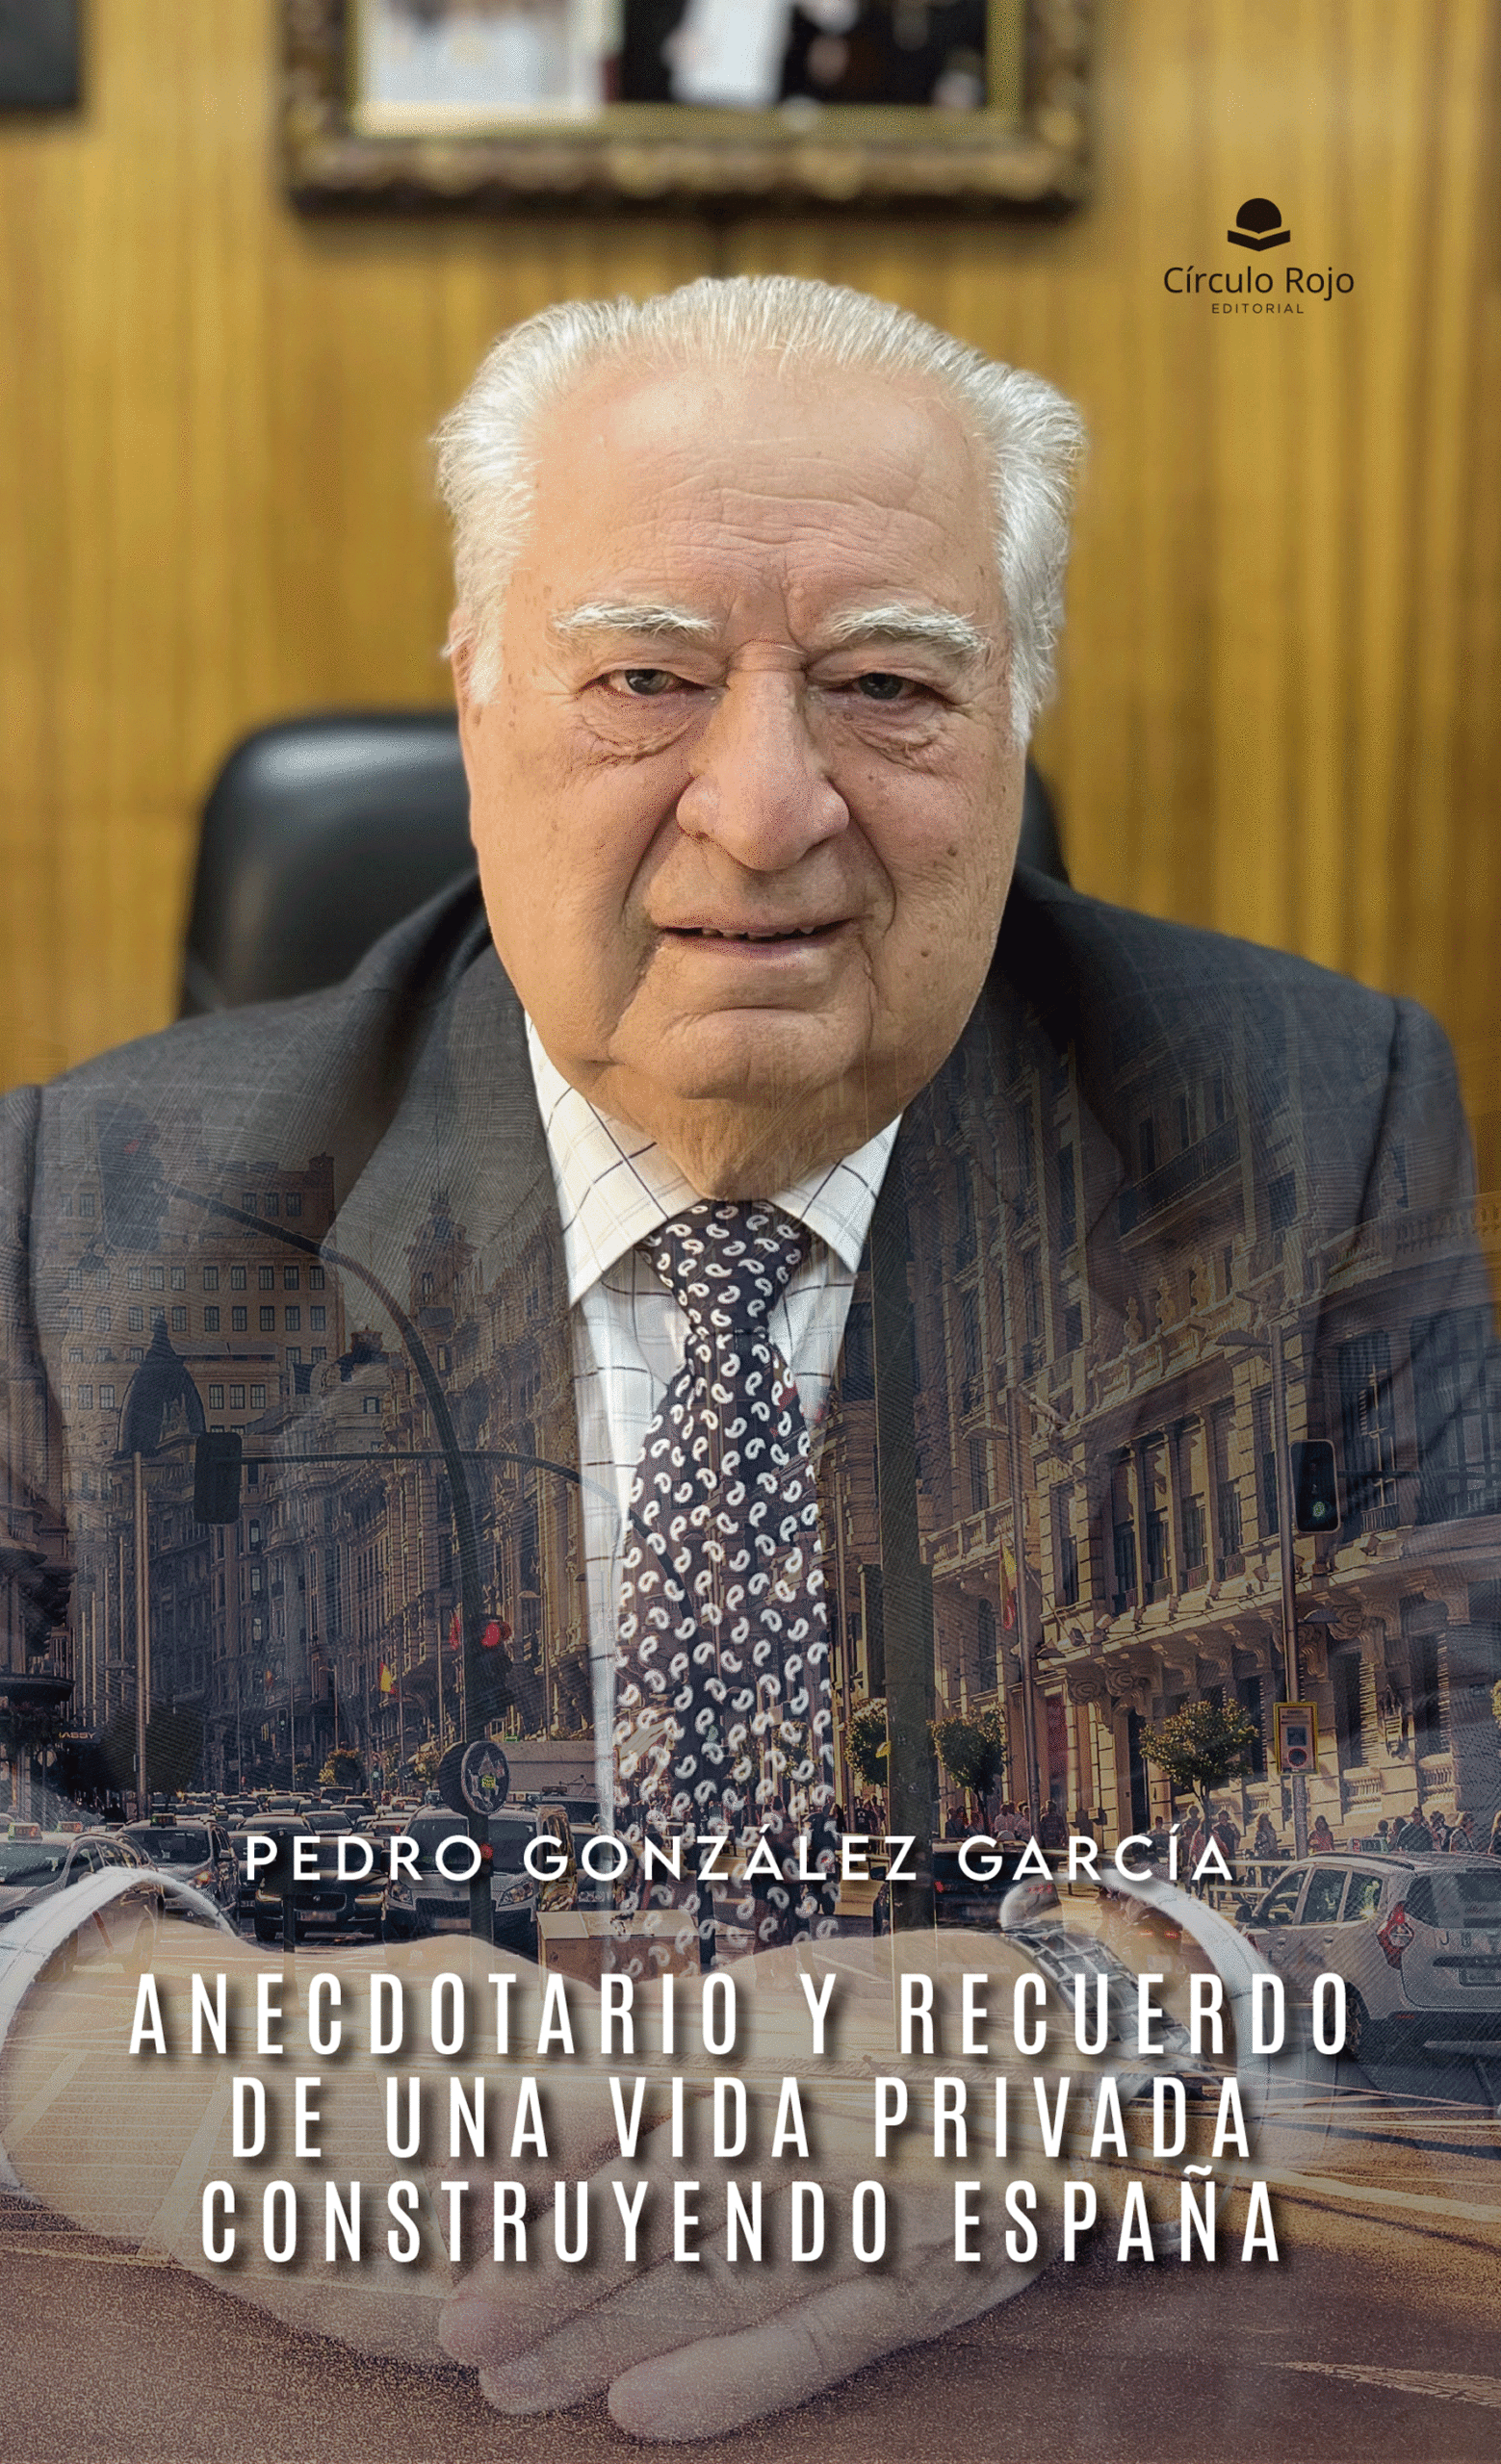 Pedro González García, nos cuenta todo sobre “Anecdotario y recuerdo de una vida privada construyendo España”, obra que ha publicado con Círculo Rojo.